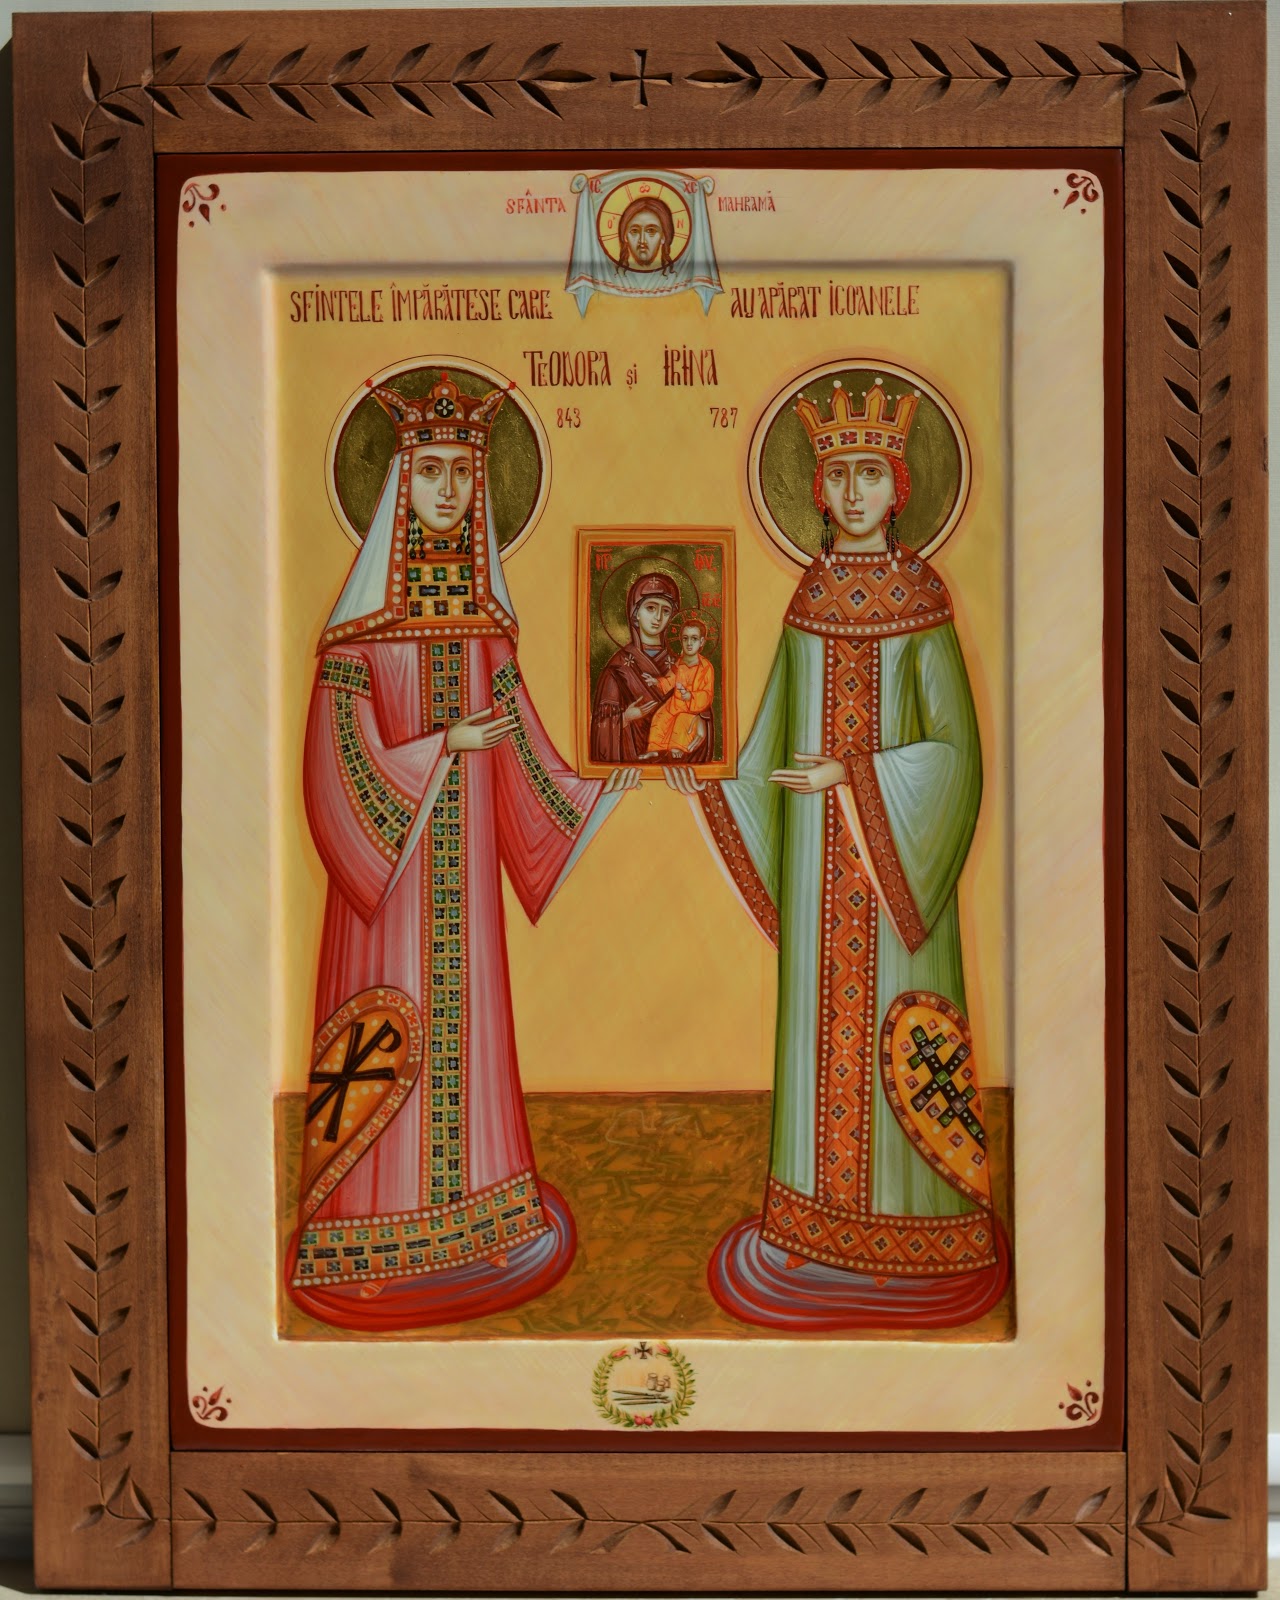 Imagini pentru Impărăteasa Teodora  II  Bizanț